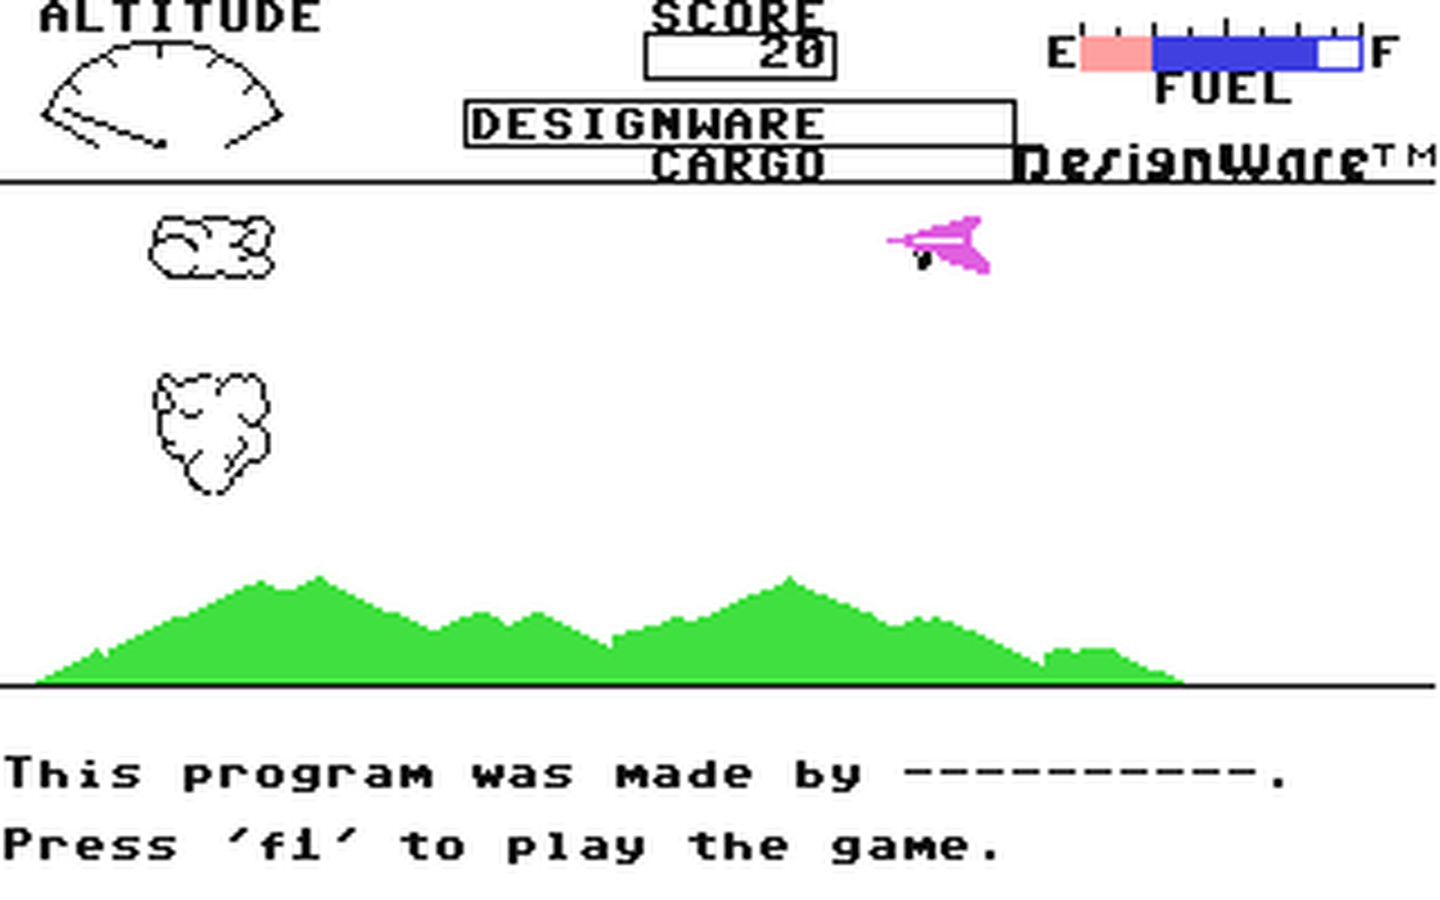 C64 GameBase Spellicopter DesignWare,_Inc. 1983